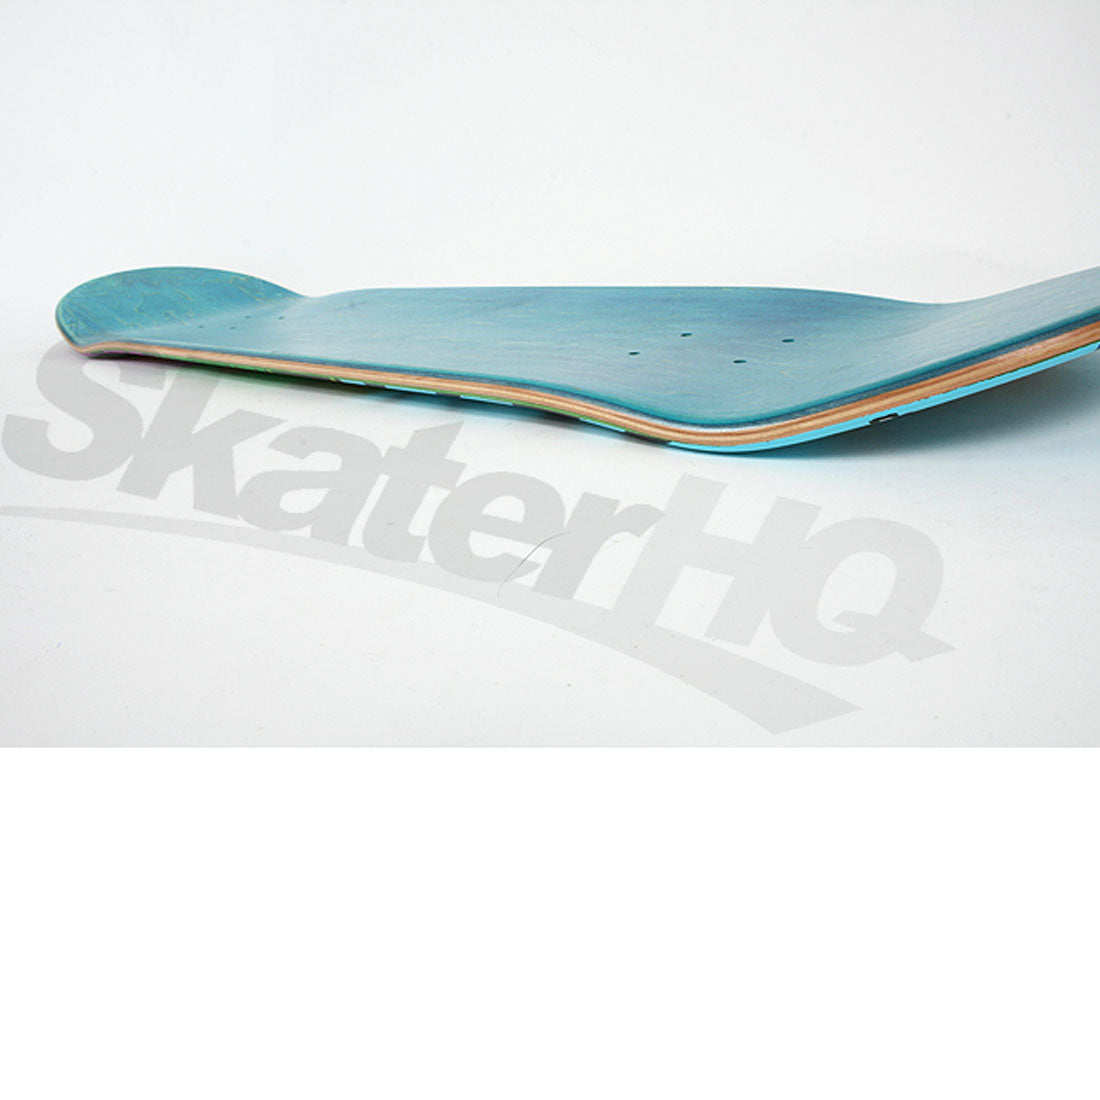 Skater HQ Ugly Stick 8.5 Deck